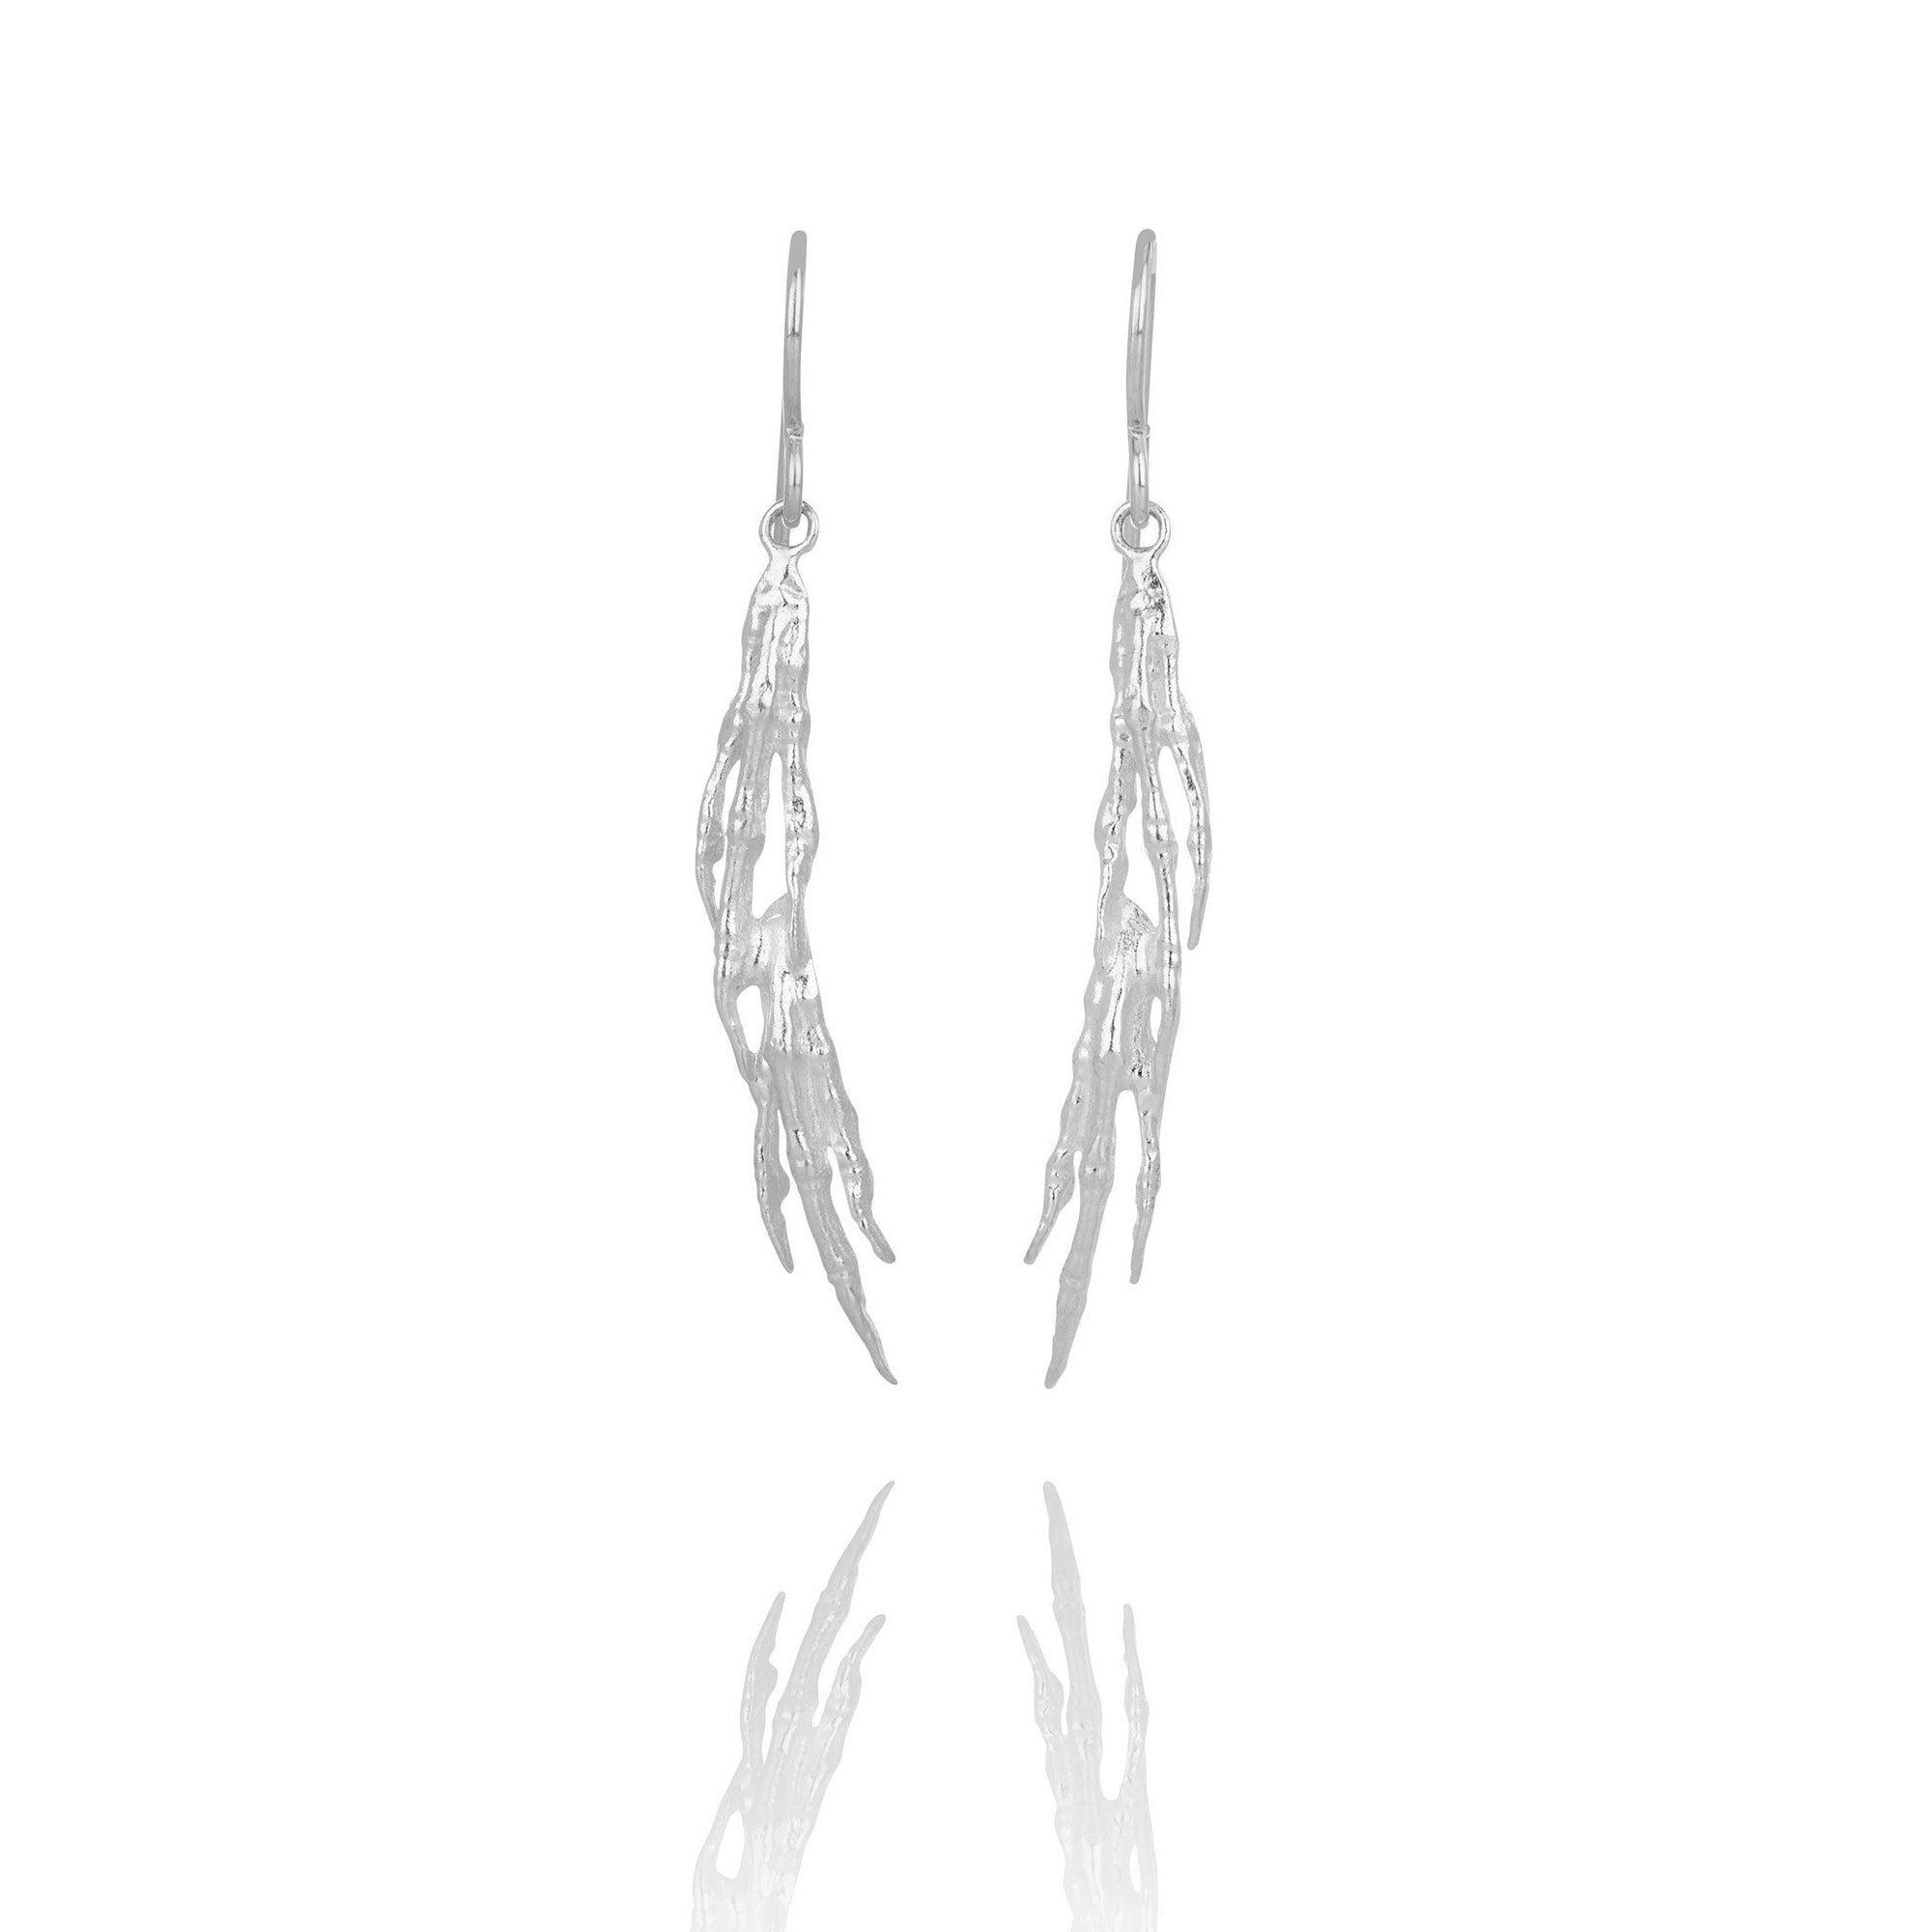 EAGLE earrings